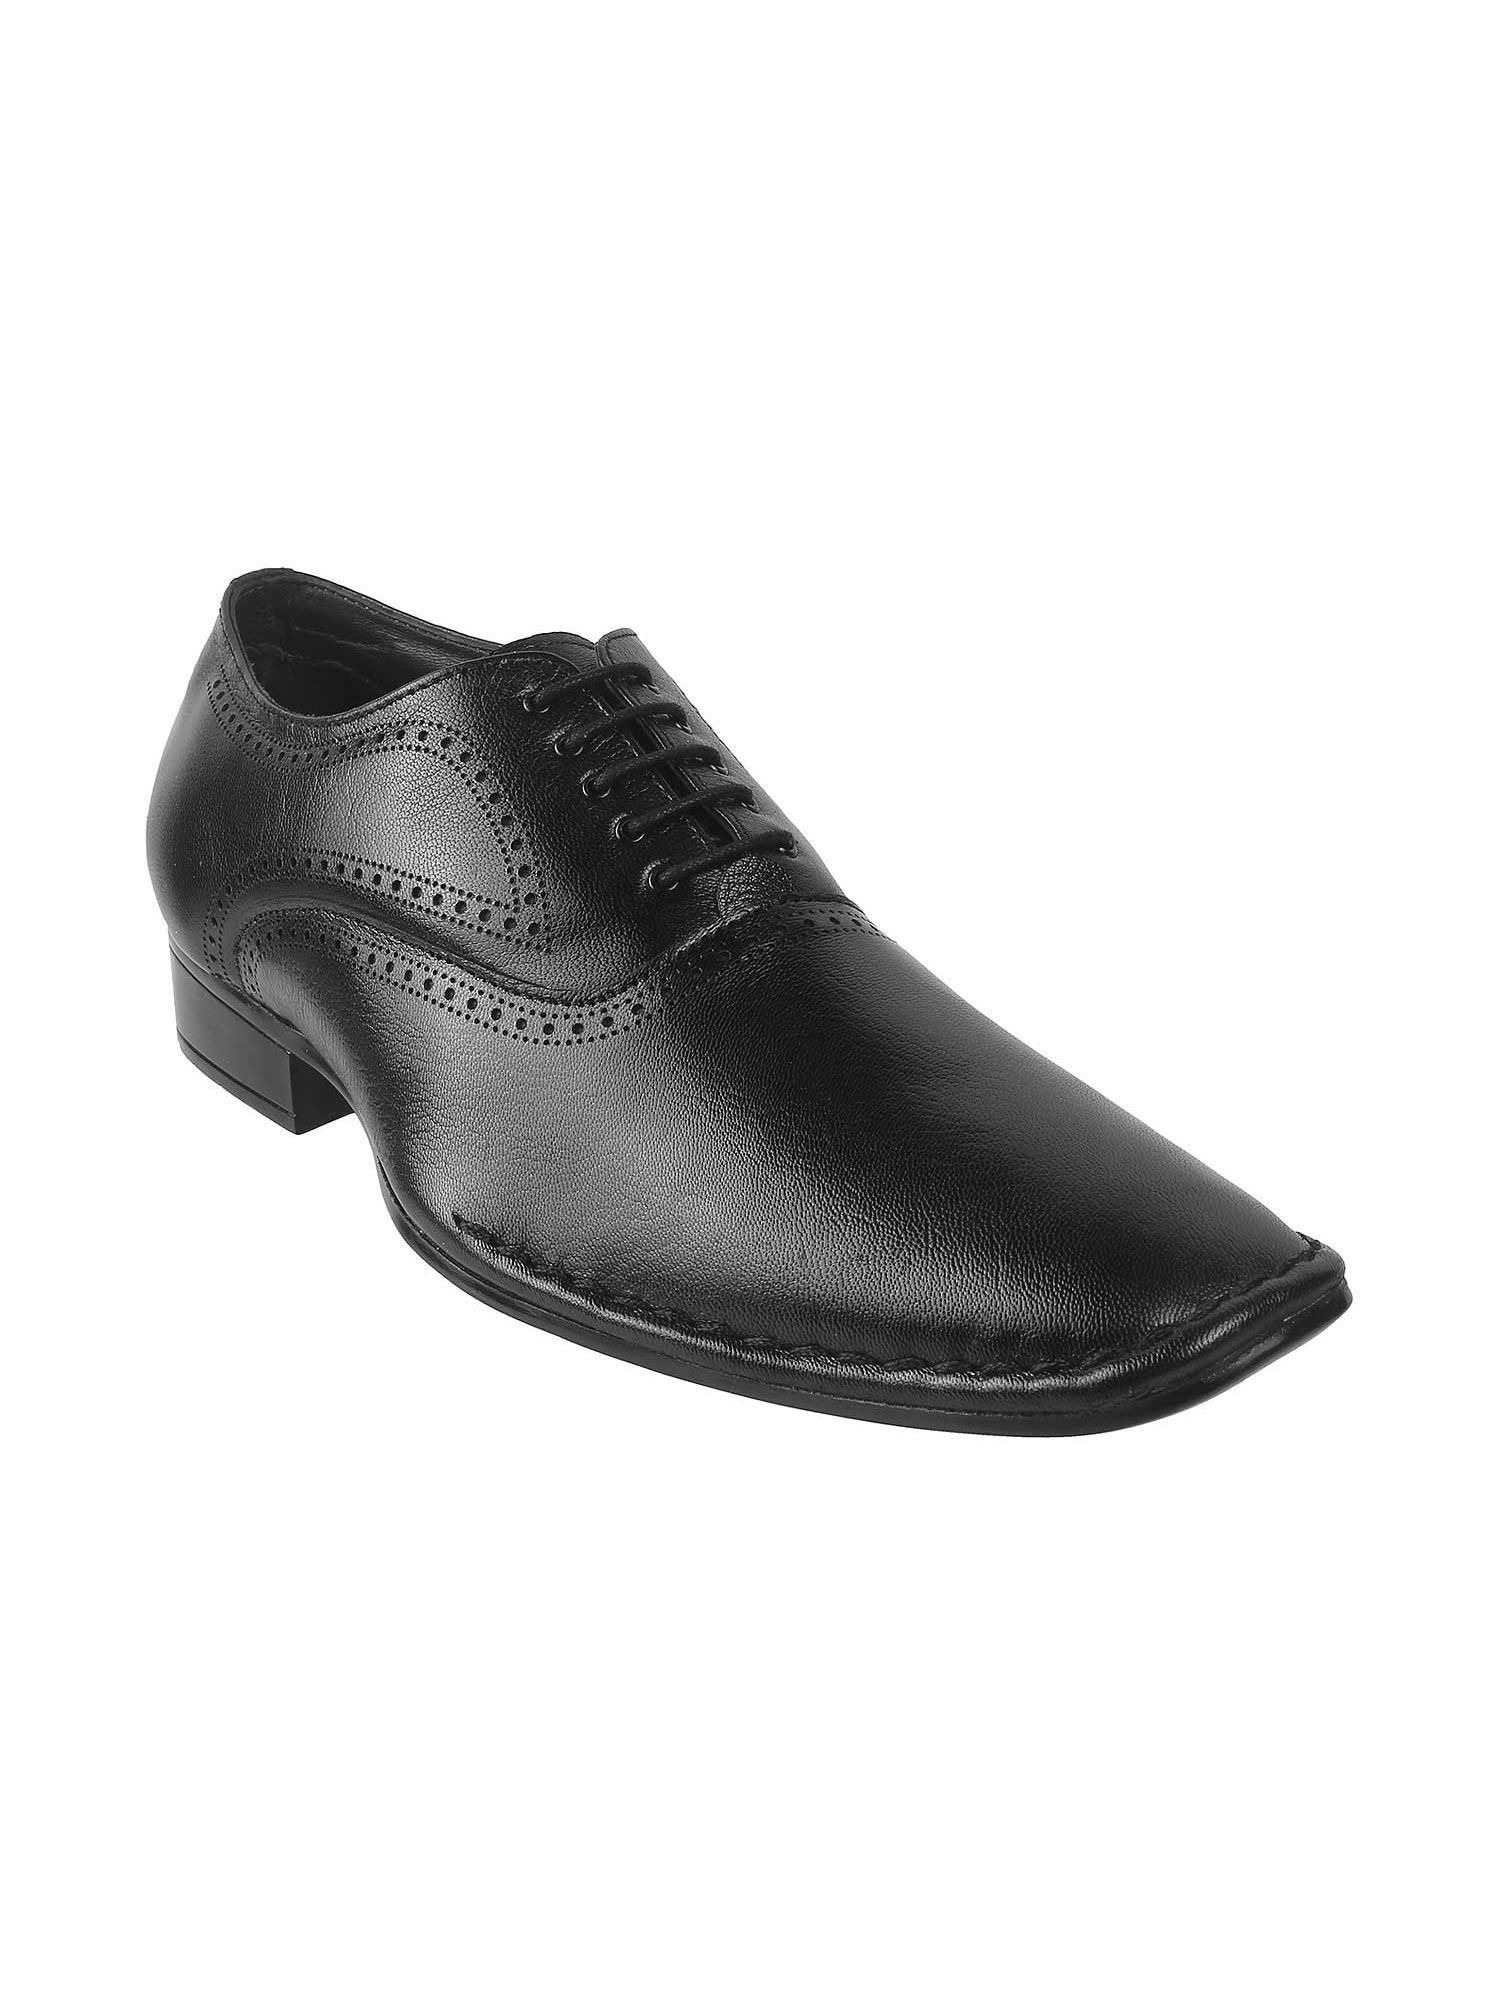 mens black formal lace-ups shoesmochi mens black formal shoes